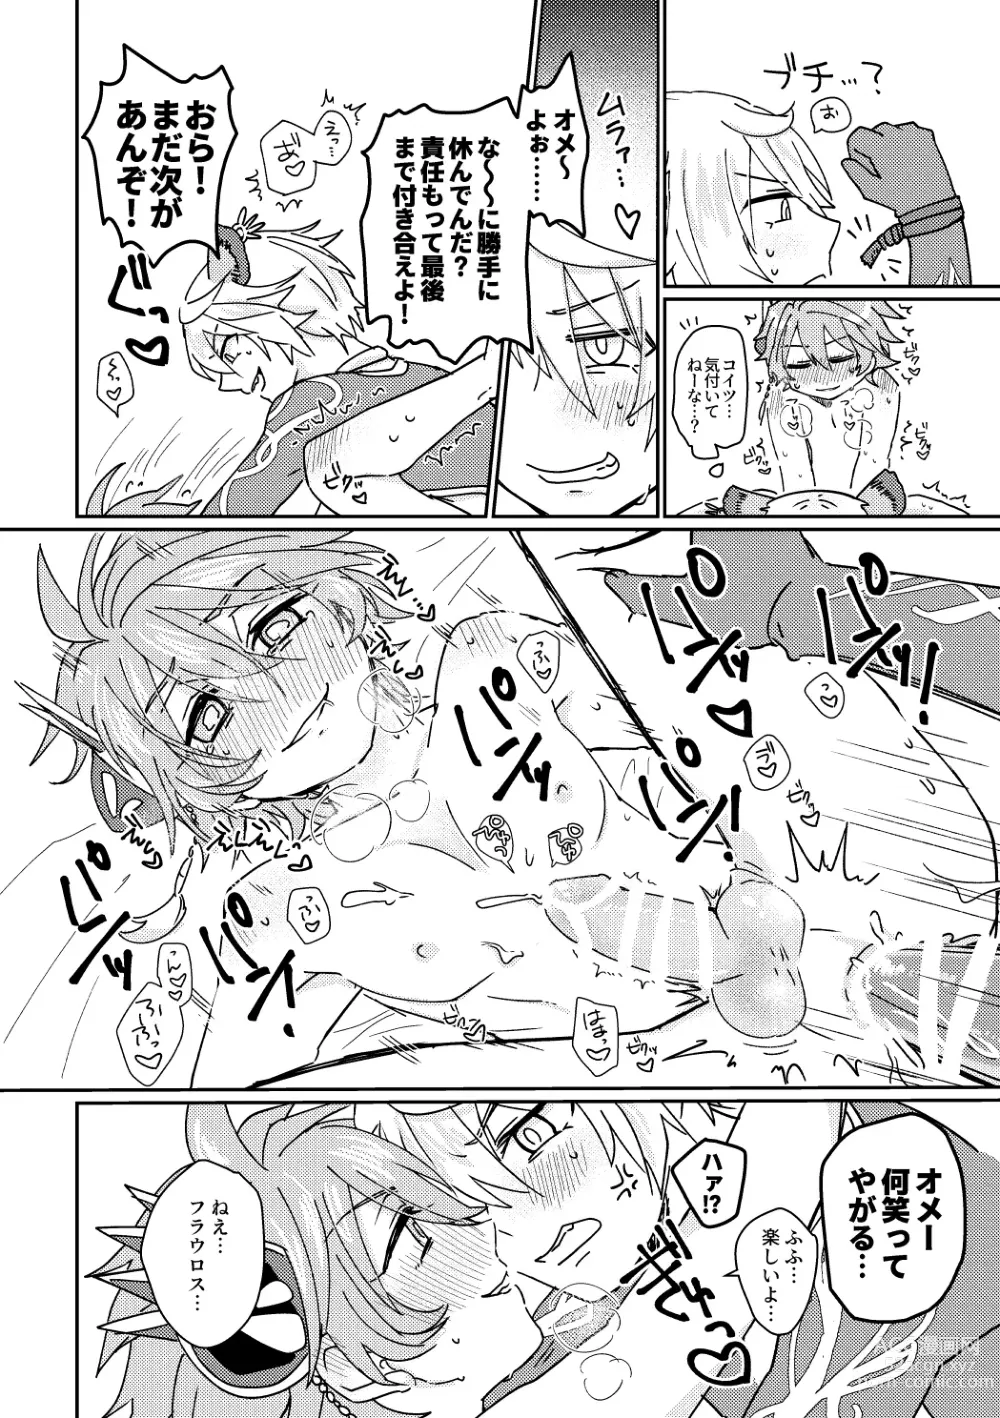 Page 29 of doujinshi Kagami 3P Hon Flauros x Andras with Akuma no Kagami